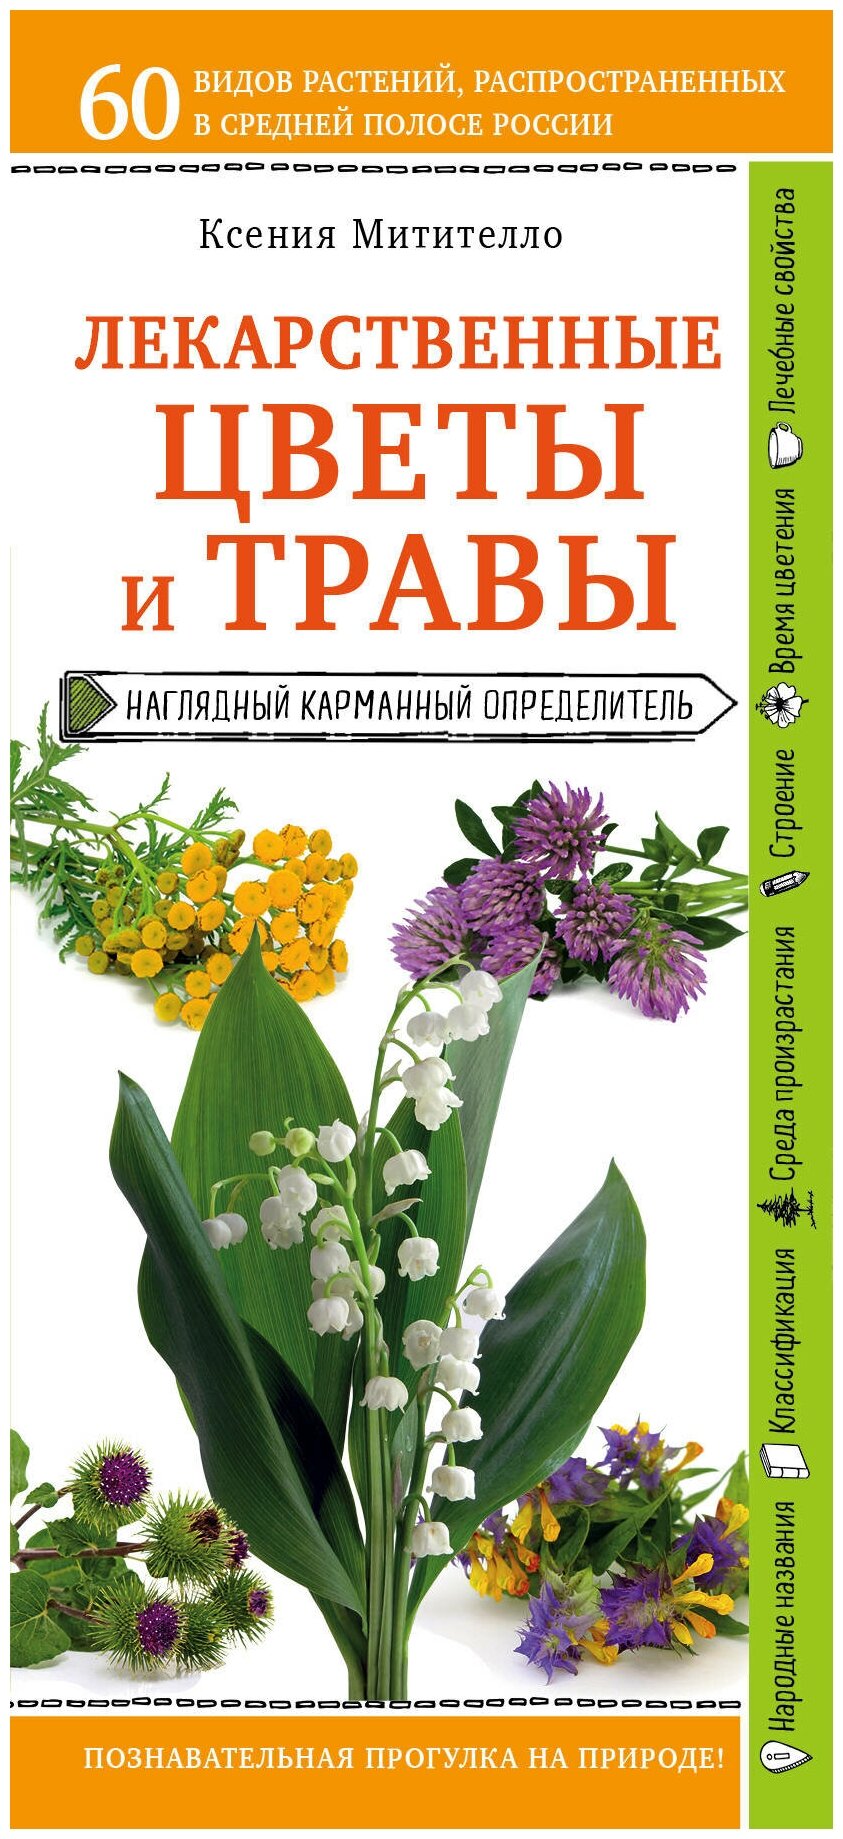 Митителло К.Б. "Лекарственные цветы и травы. Наглядный карманный определитель"